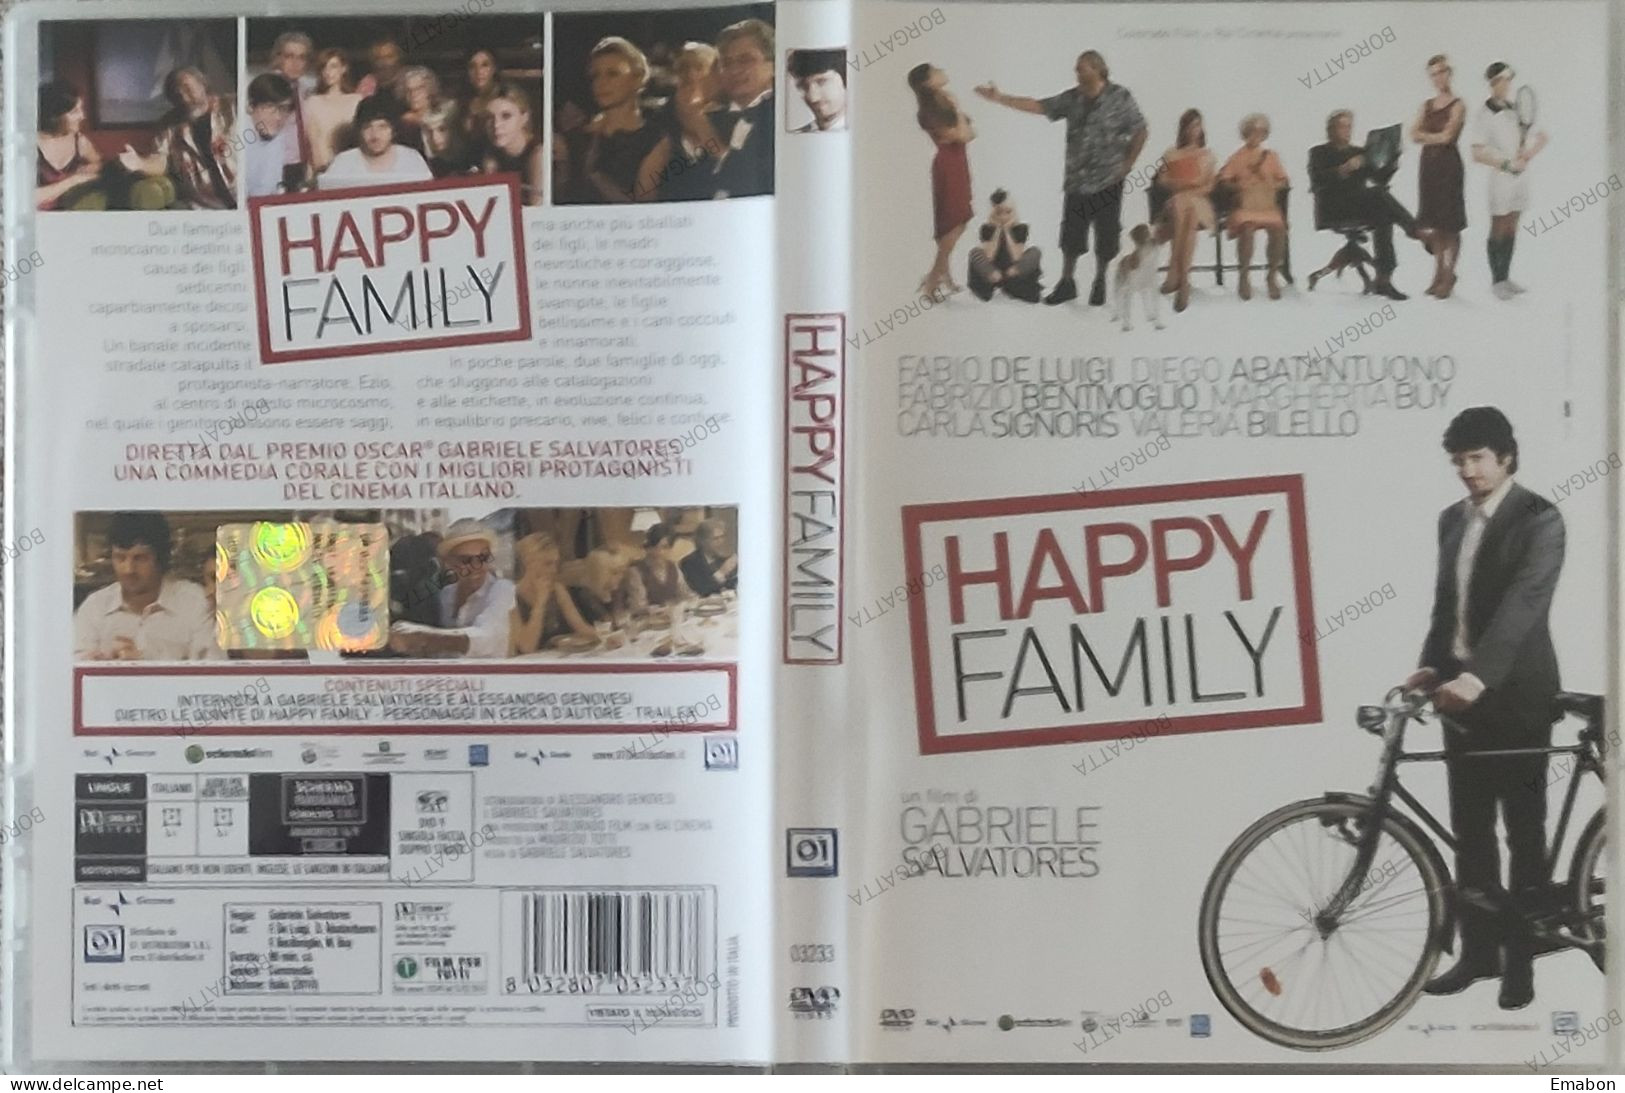 BORGATTA - COMMEDIA - Dvd HAPPY FAMILY - GABRIELE SALVATORES - PAL 2 DVD 9 -  01 DISTRIBUTIO 2010 - USATO In Buono Stato - Comédie